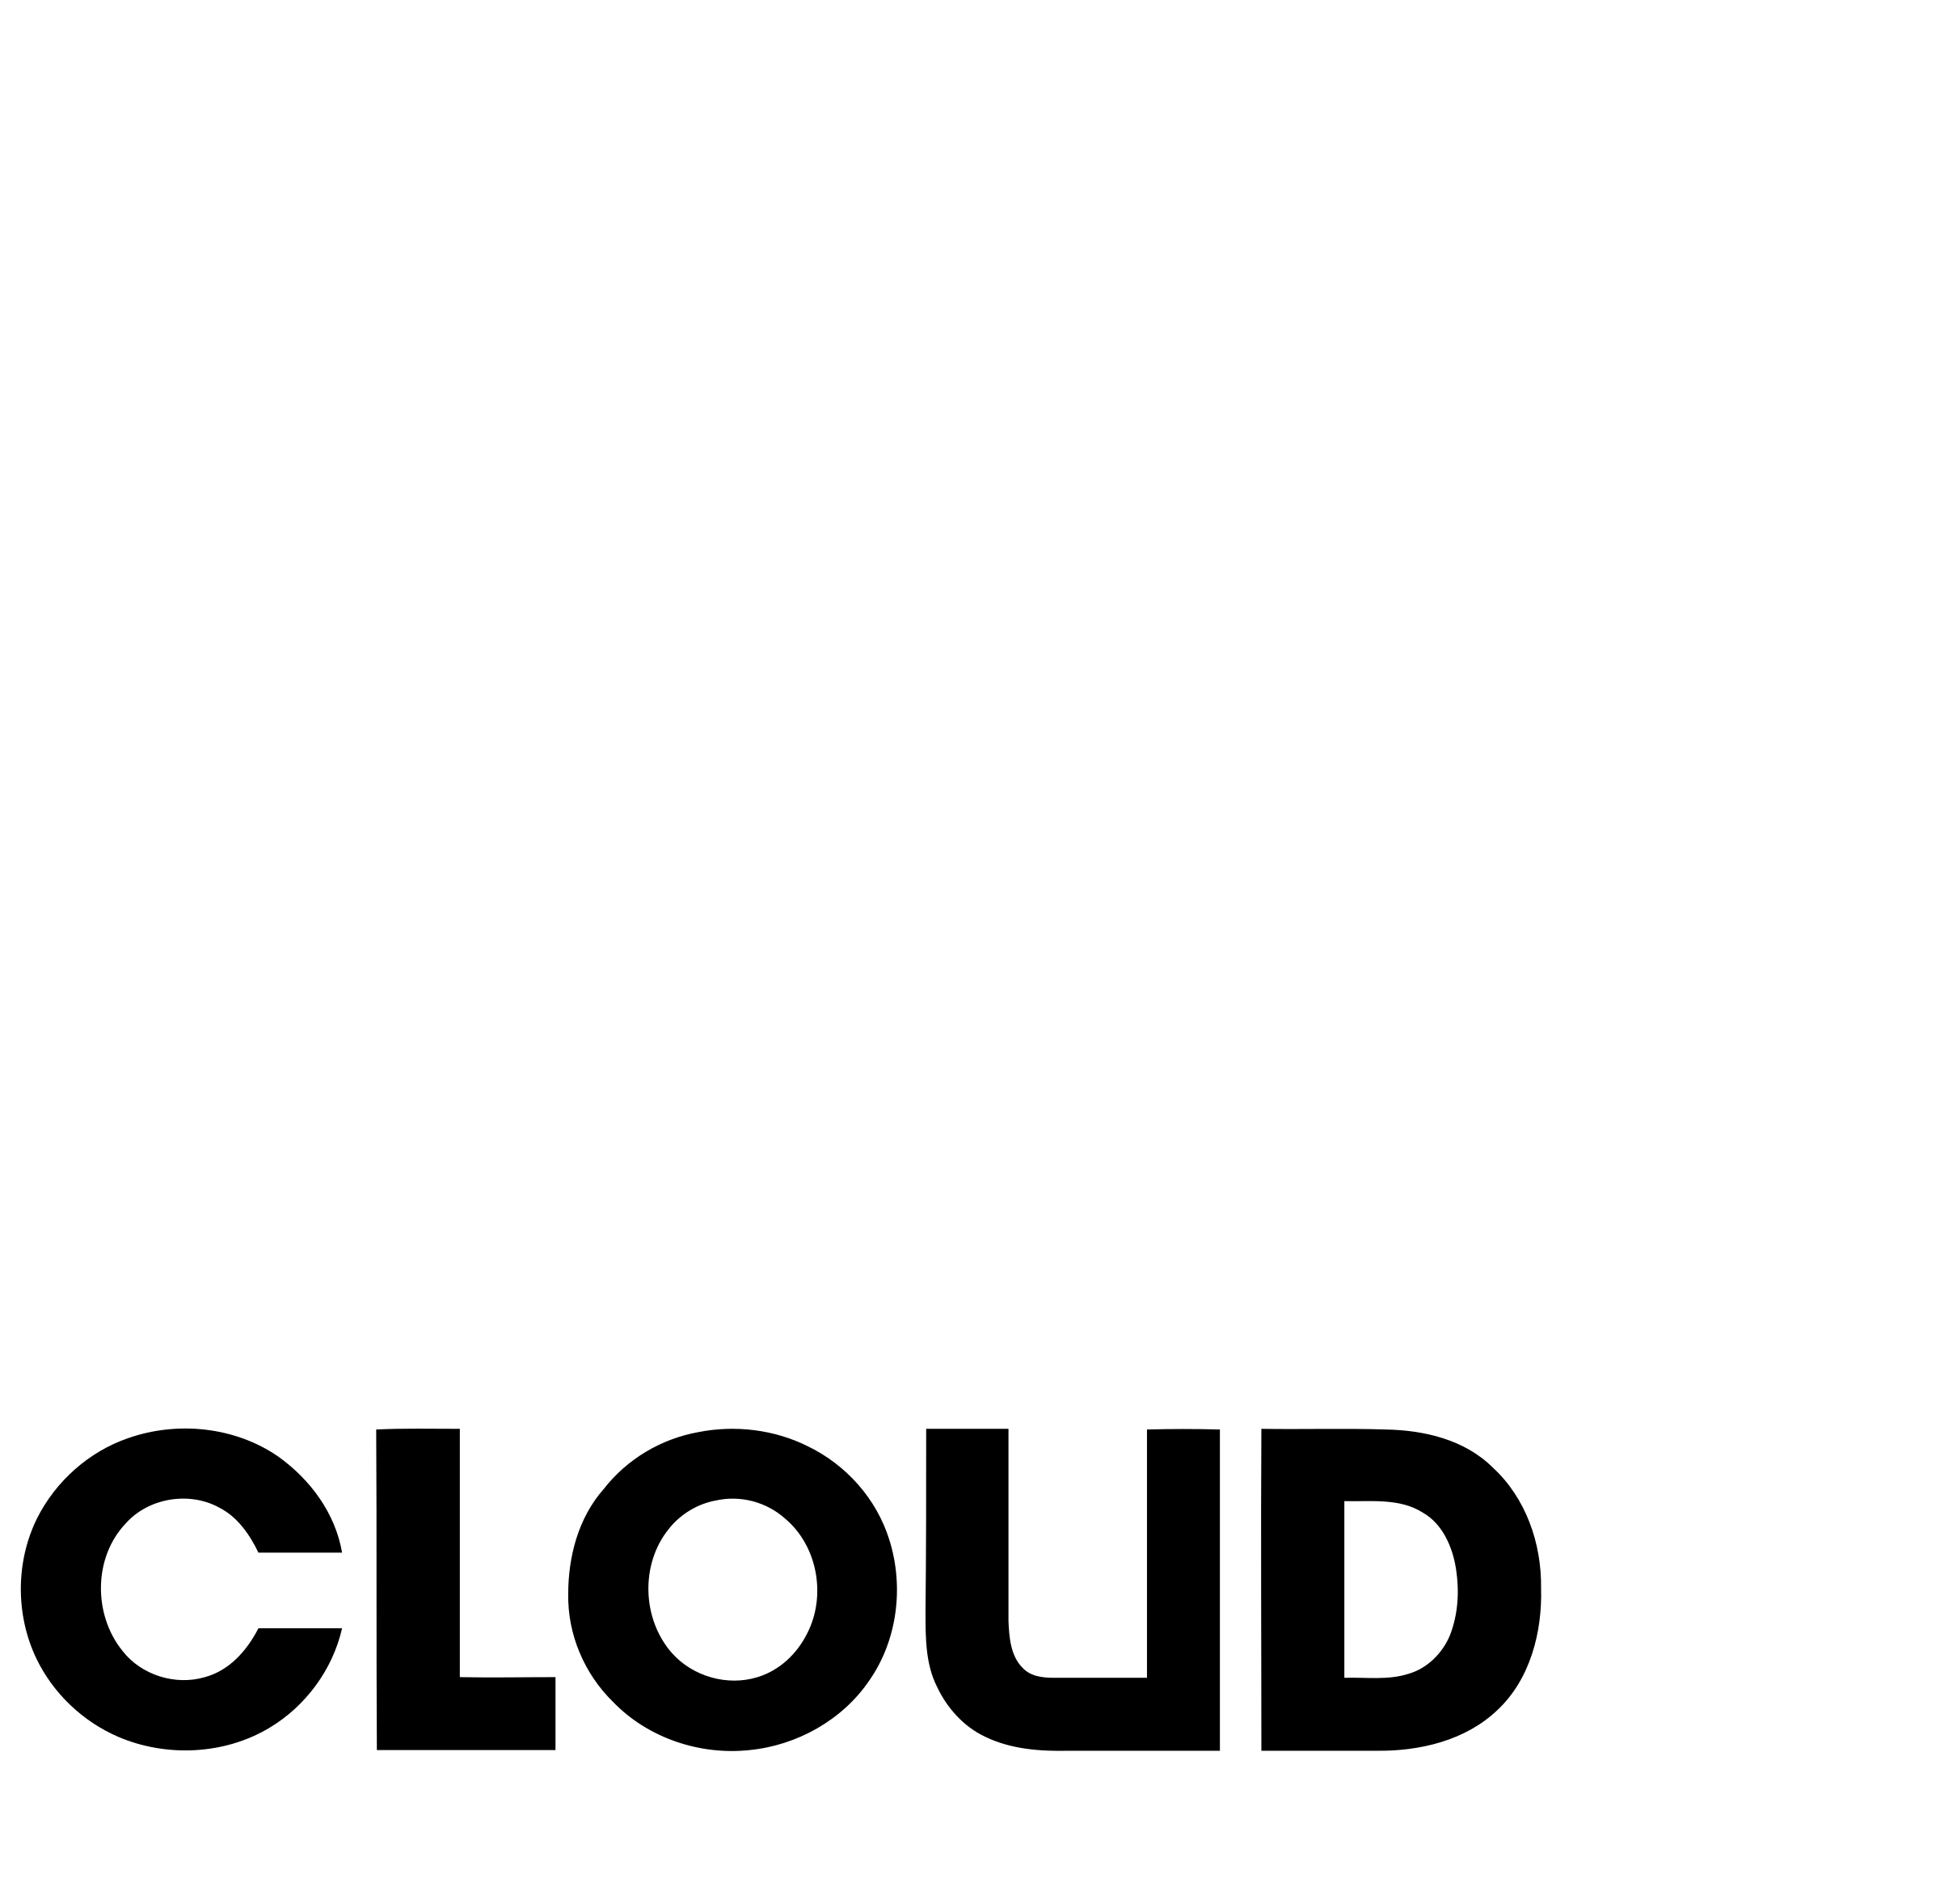 White Cloud Logo - Cloud 9 Logo PNG Transparent & SVG Vector